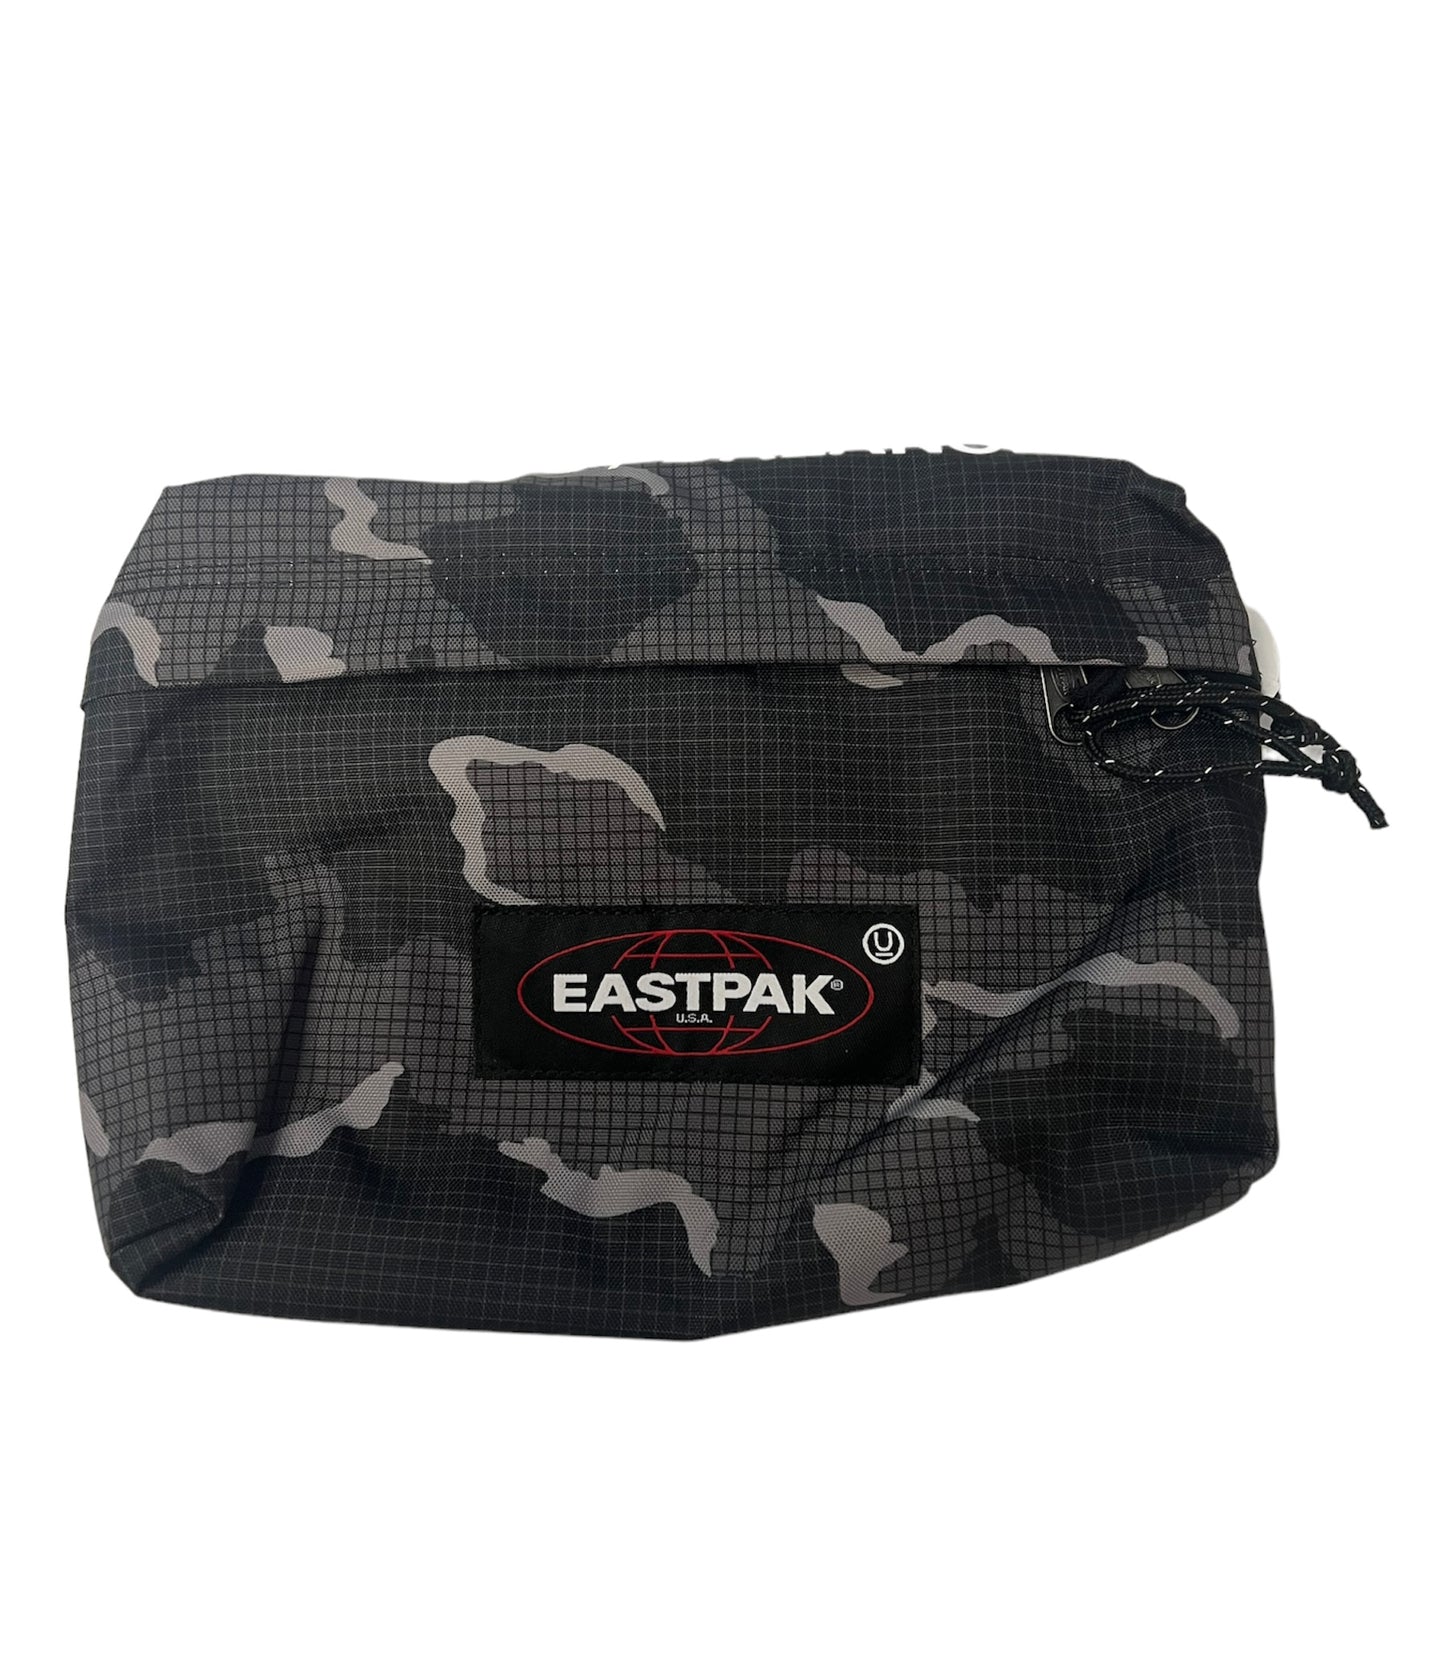 Eastpak/Undercover Side Bag “Black Camo”